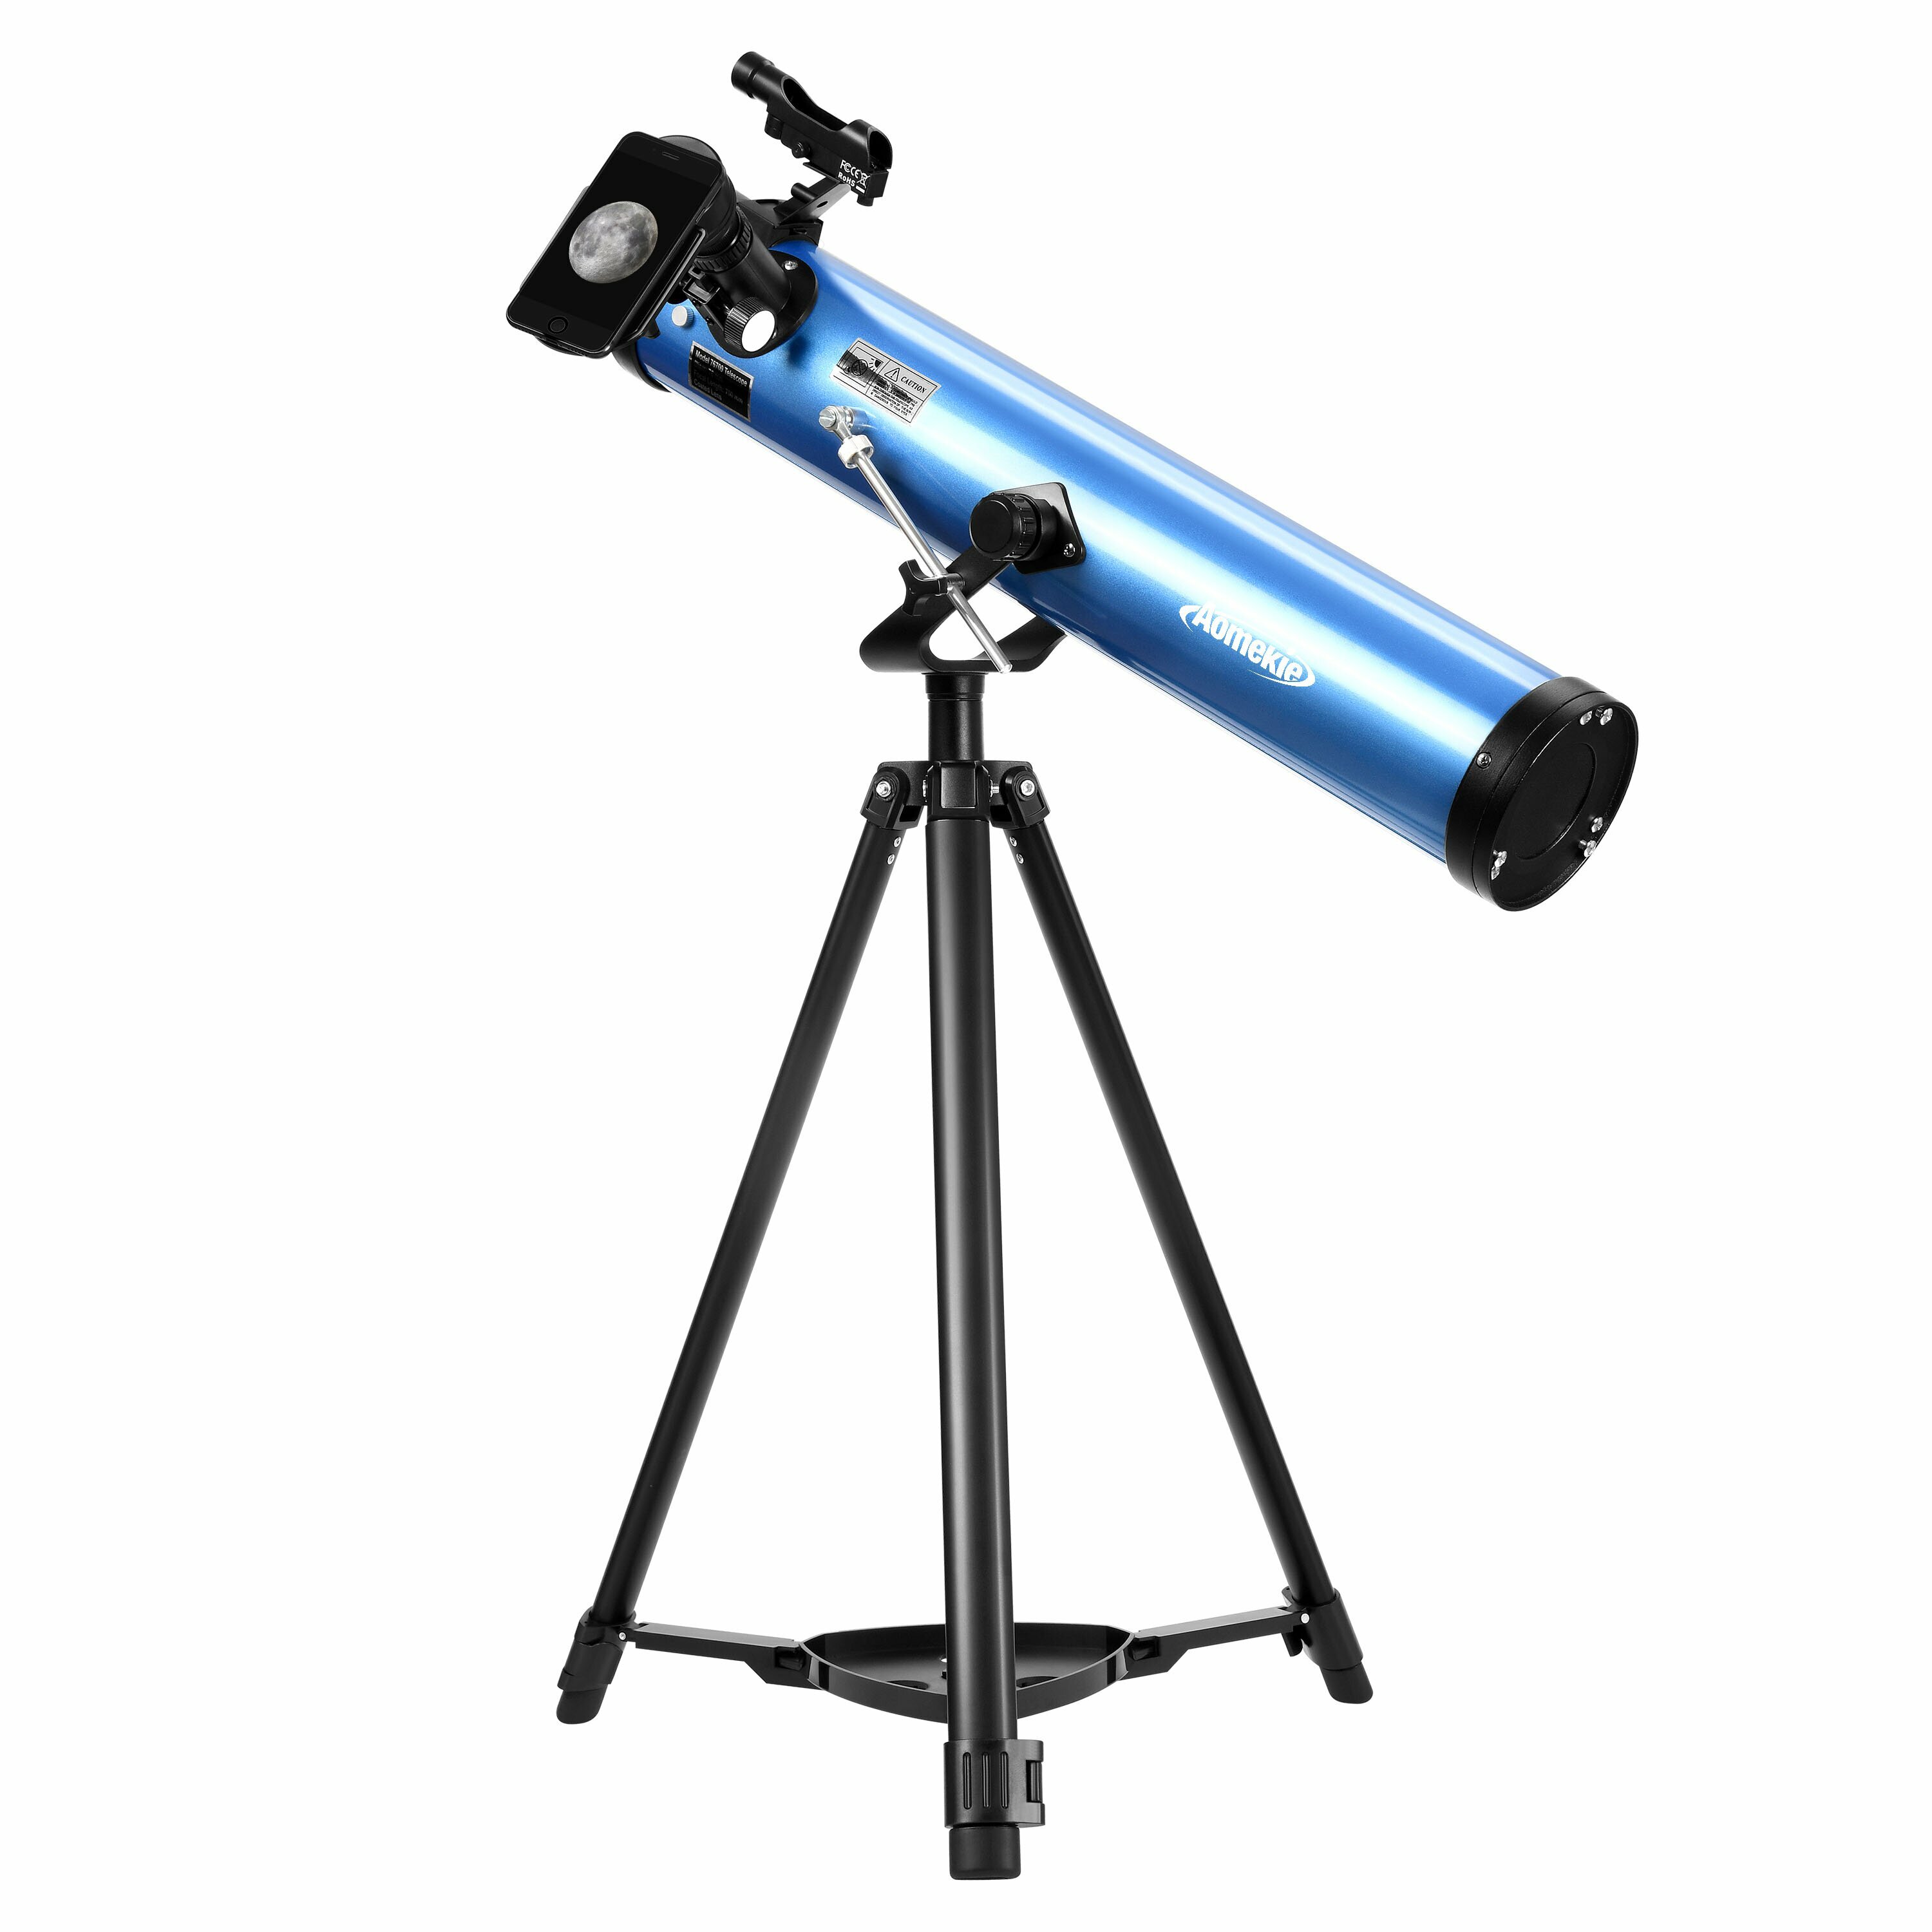 [EU Direct] AOMEKIE Télescopes réflecteurs pour débutants adultes en astronomie 76mm/700mm avec adaptateur pour téléphone, contrôleur Bluetooth, trépied, chercheur et filtre lunaire A02018